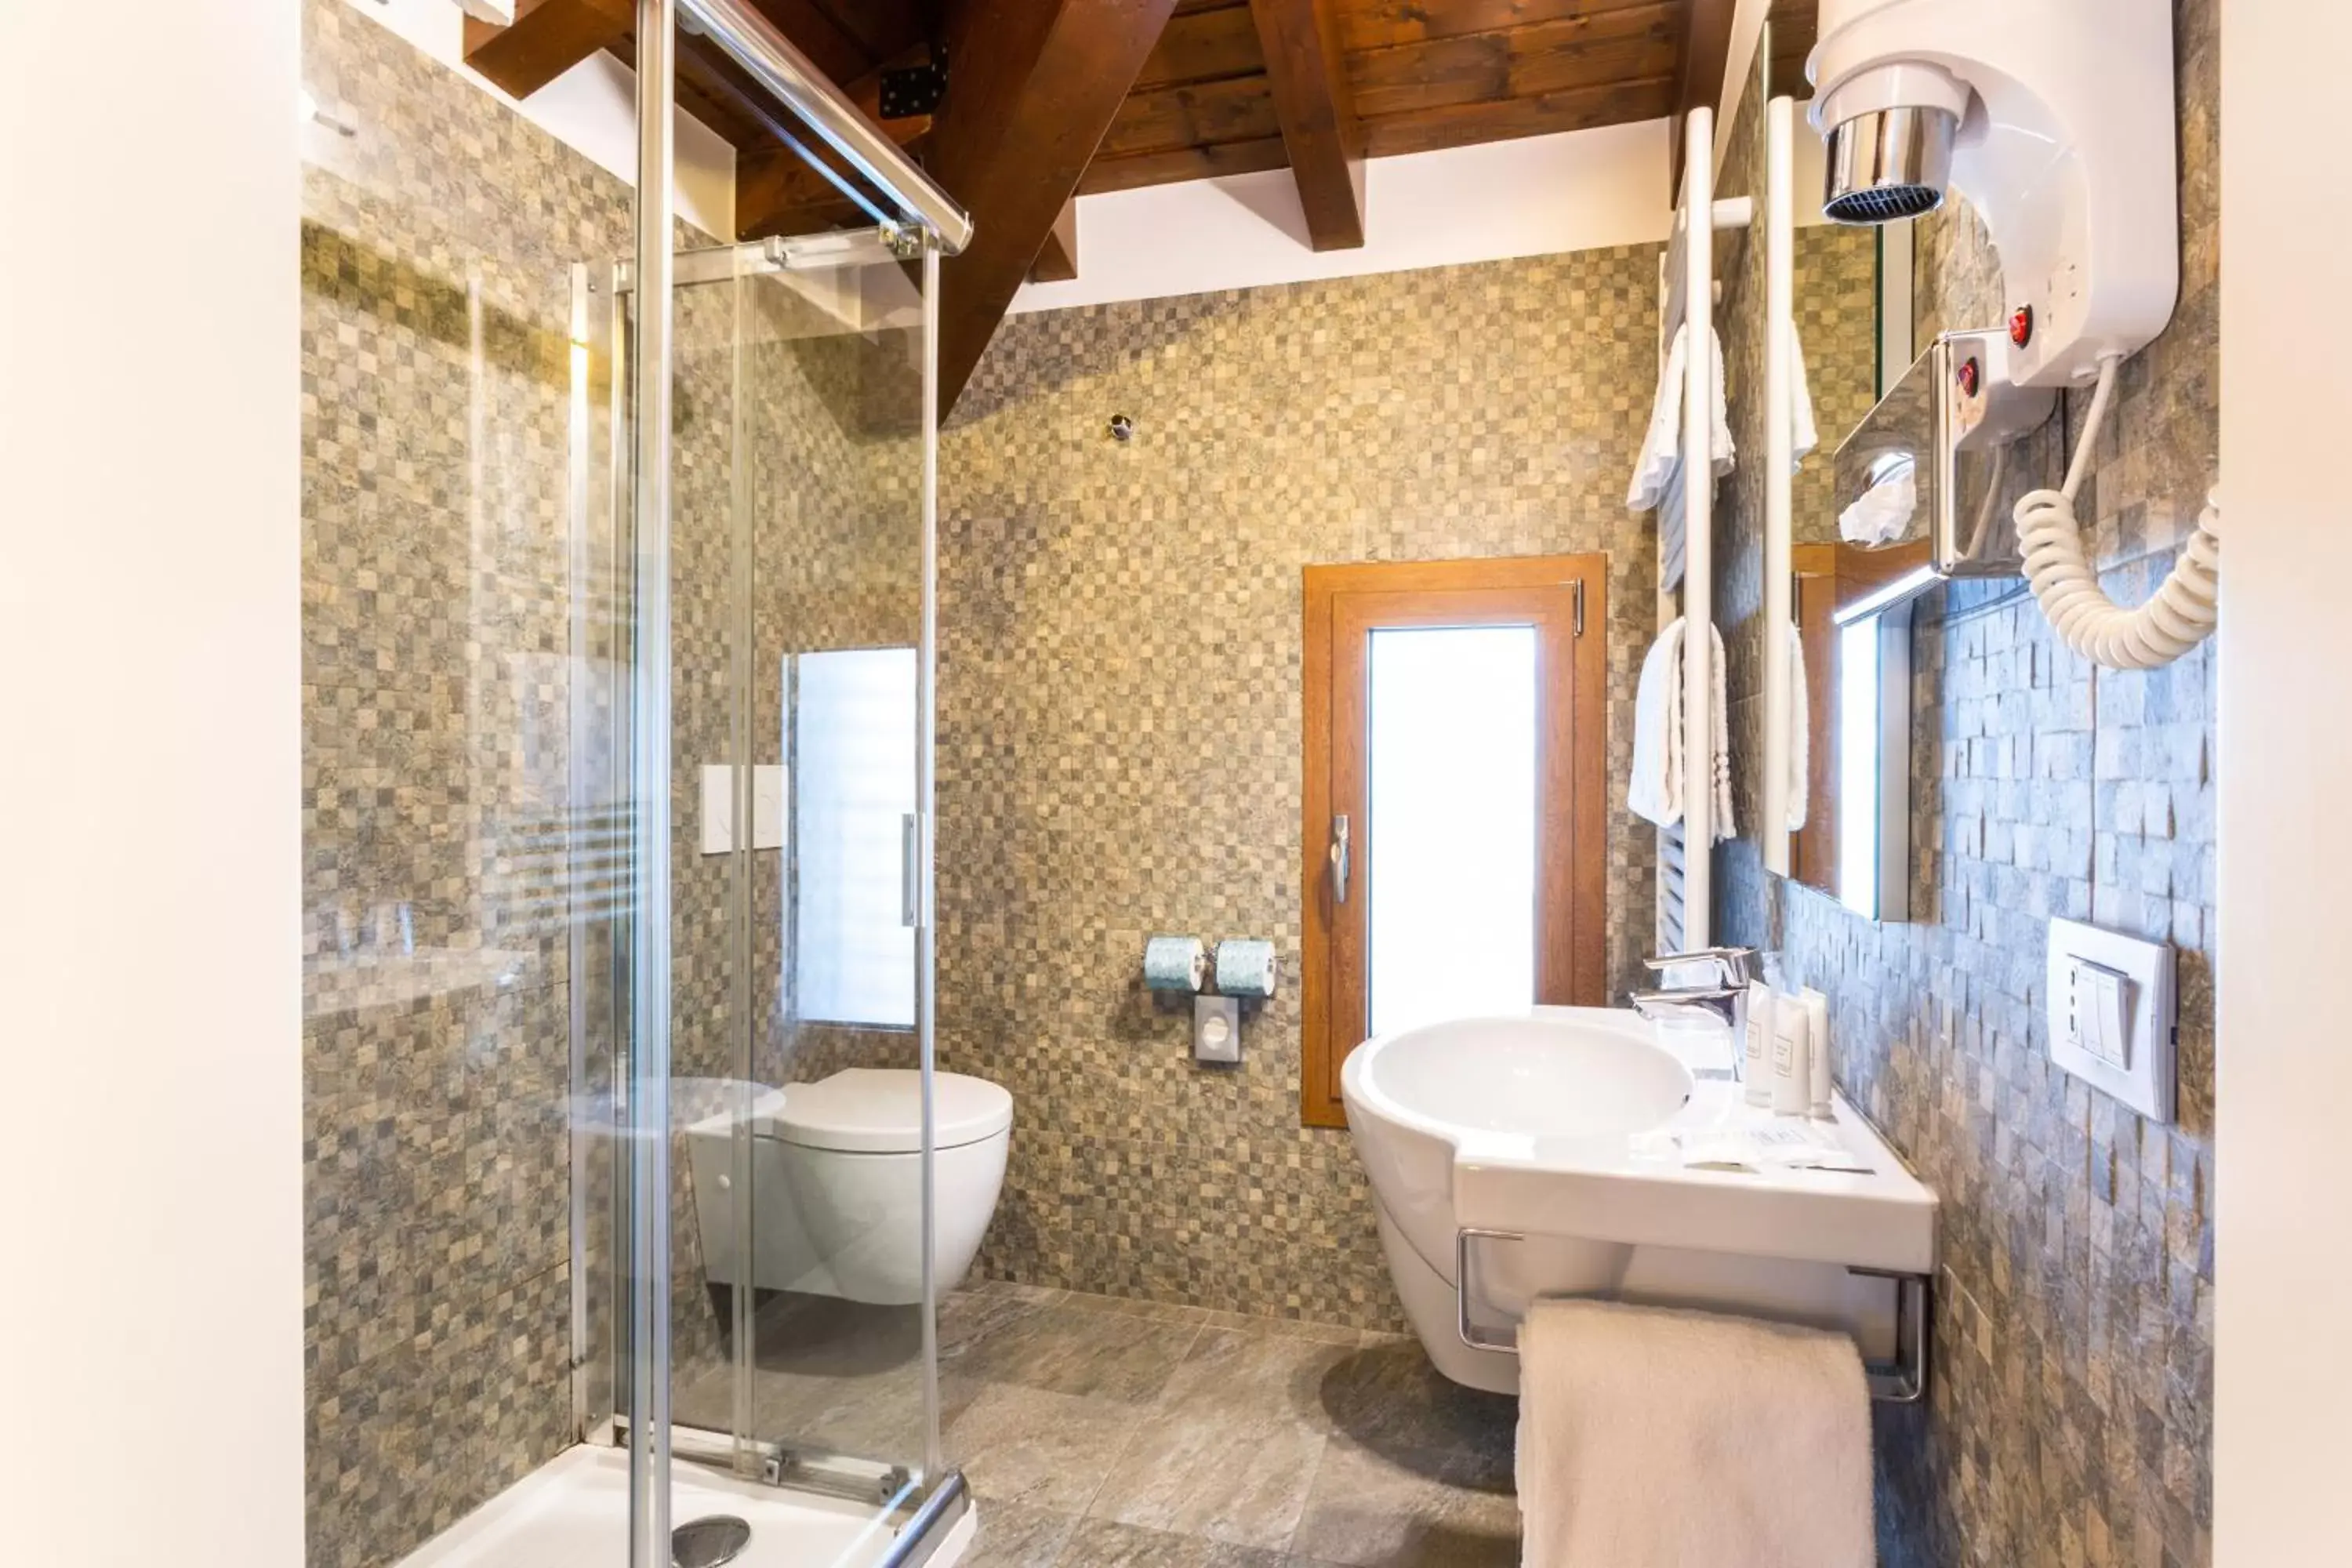 Shower, Bathroom in BEST WESTERN Titian Inn Hotel Treviso